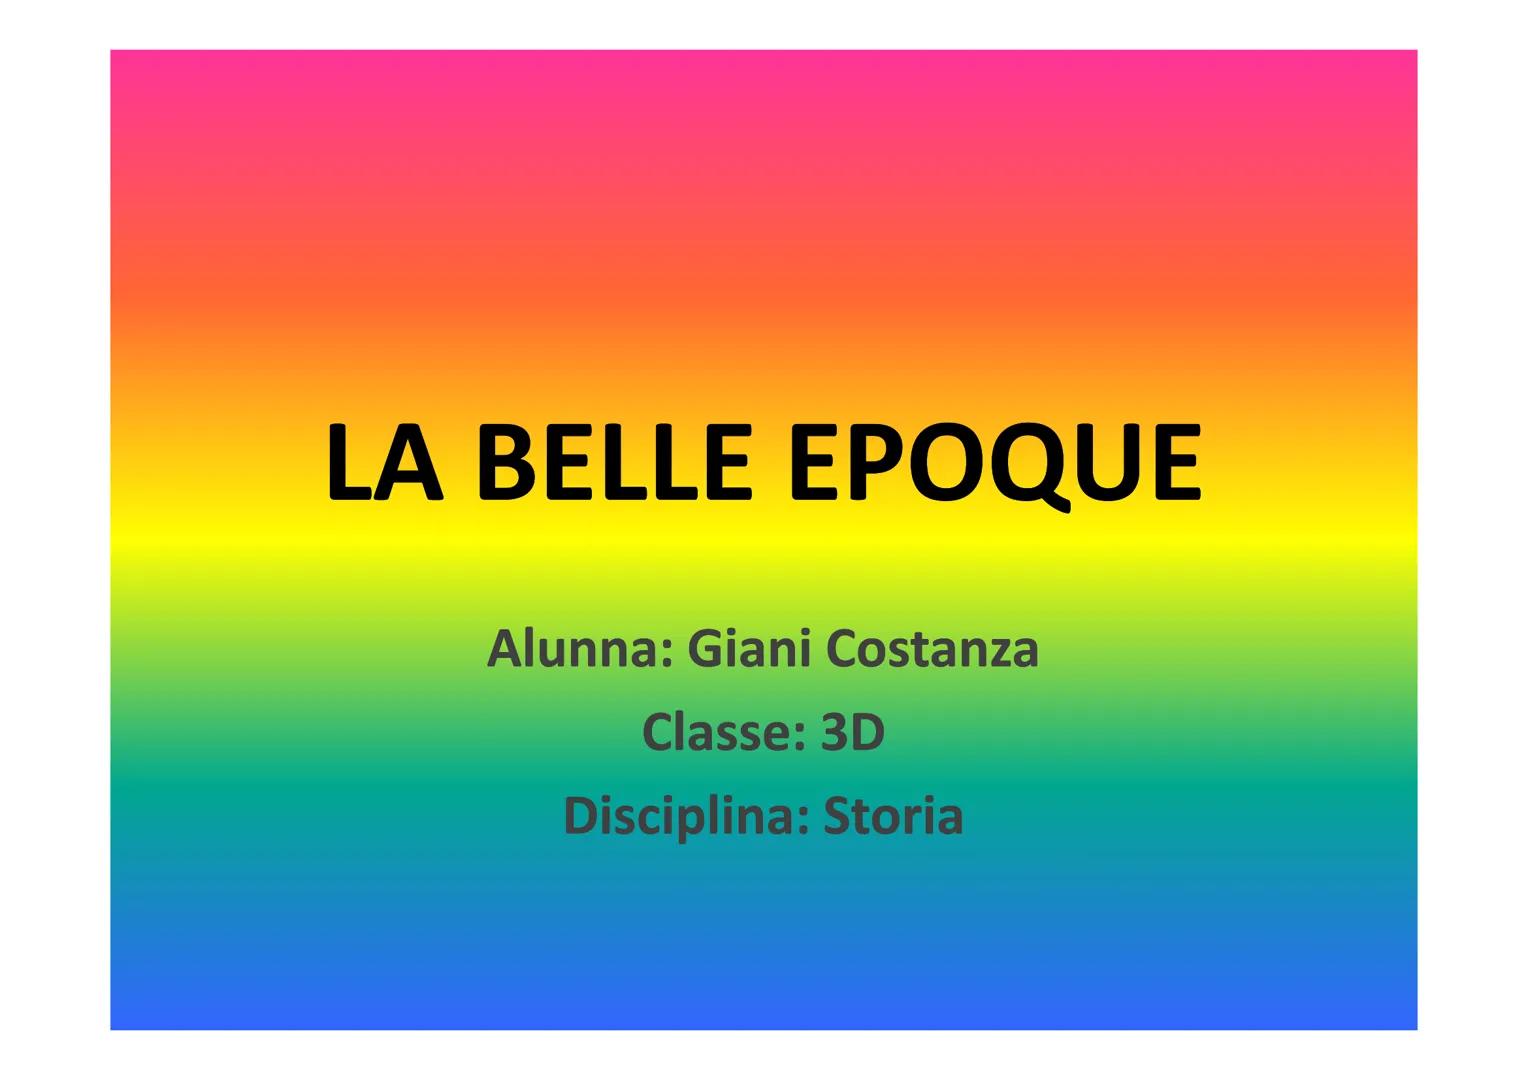 LA BELLE EPOQUE
Alunna: Giani Costanza
Classe: 3D
Disciplina: Storia BELLE EPOQUE
• La Belle époque (dal francese "epoca bella") è un
period